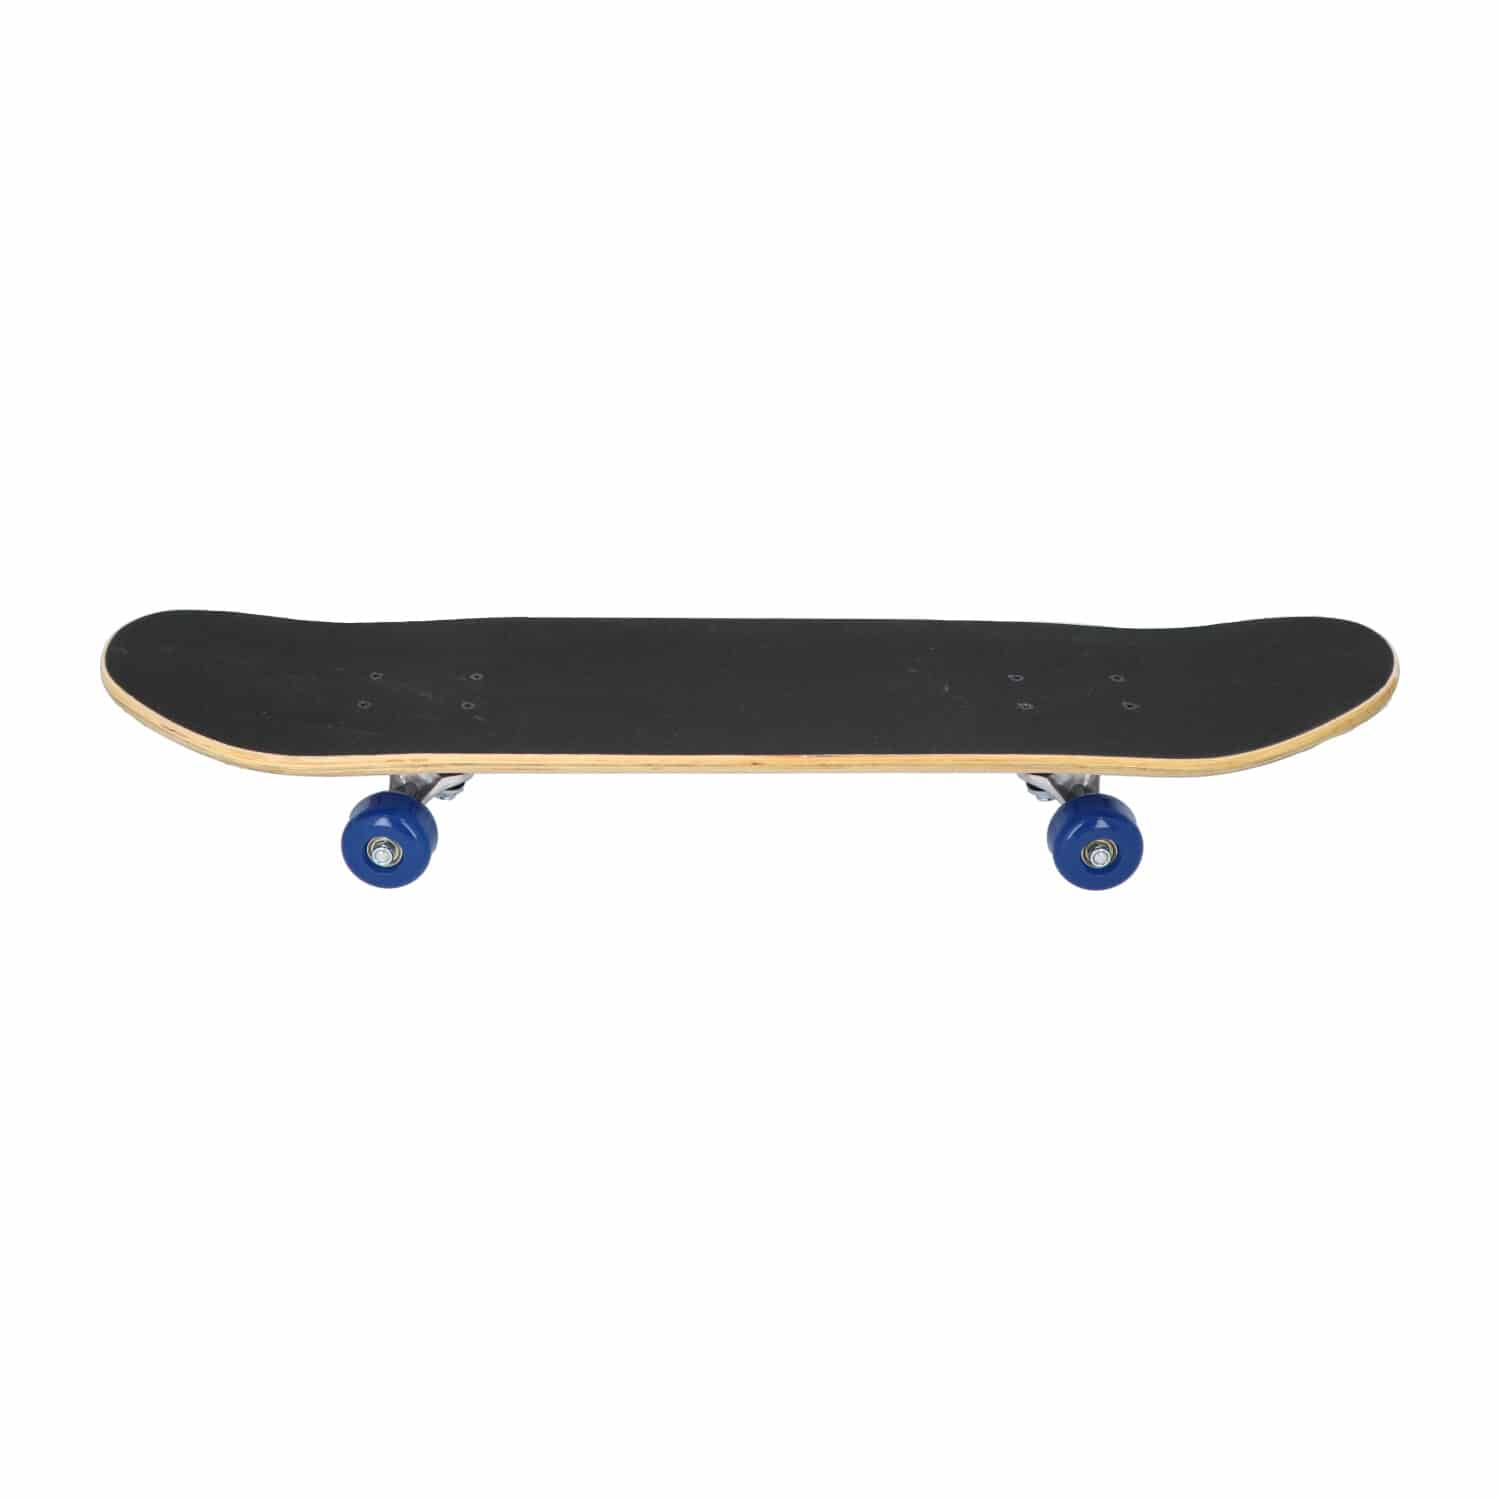 Laubr United Kingdom skateboard - 31 inch - Abec 5